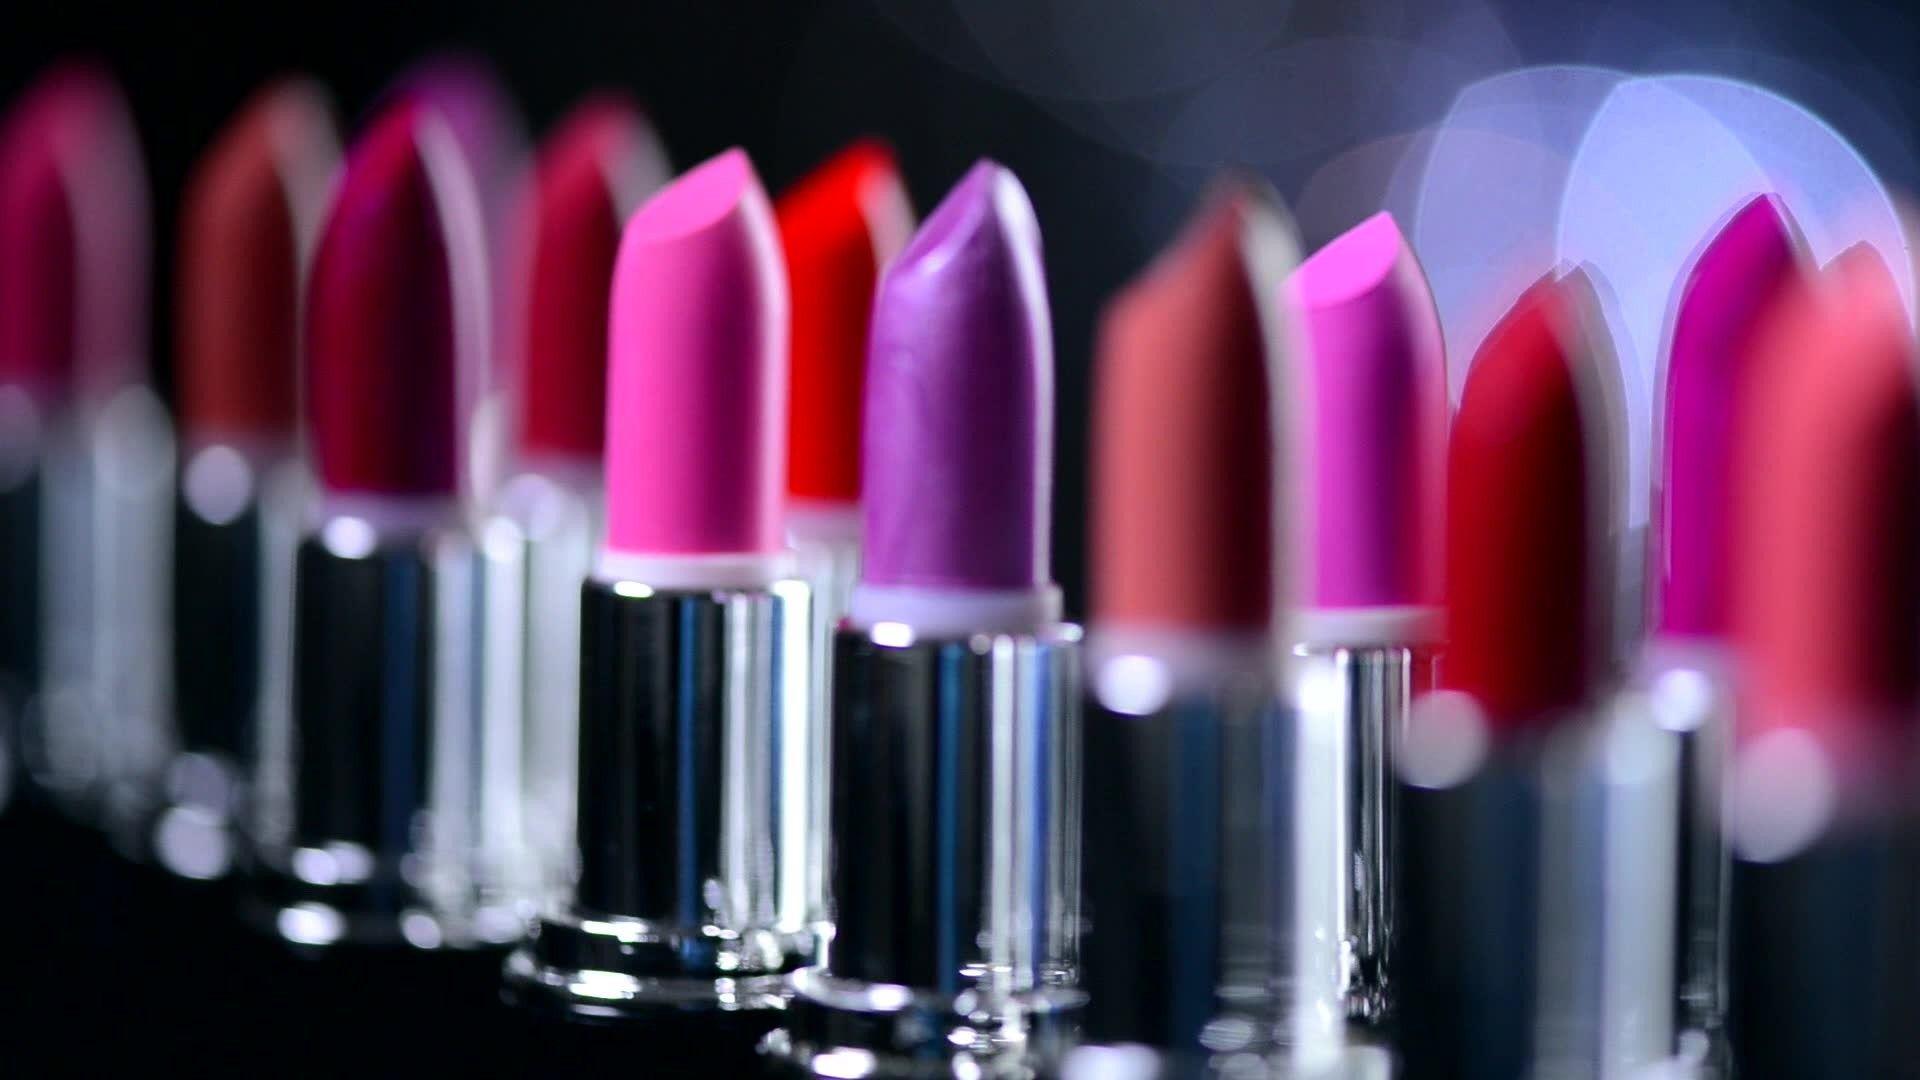 Lipstick an diamonds lipstick pattern makeup pink lips shimmer HD  phone wallpaper  Peakpx